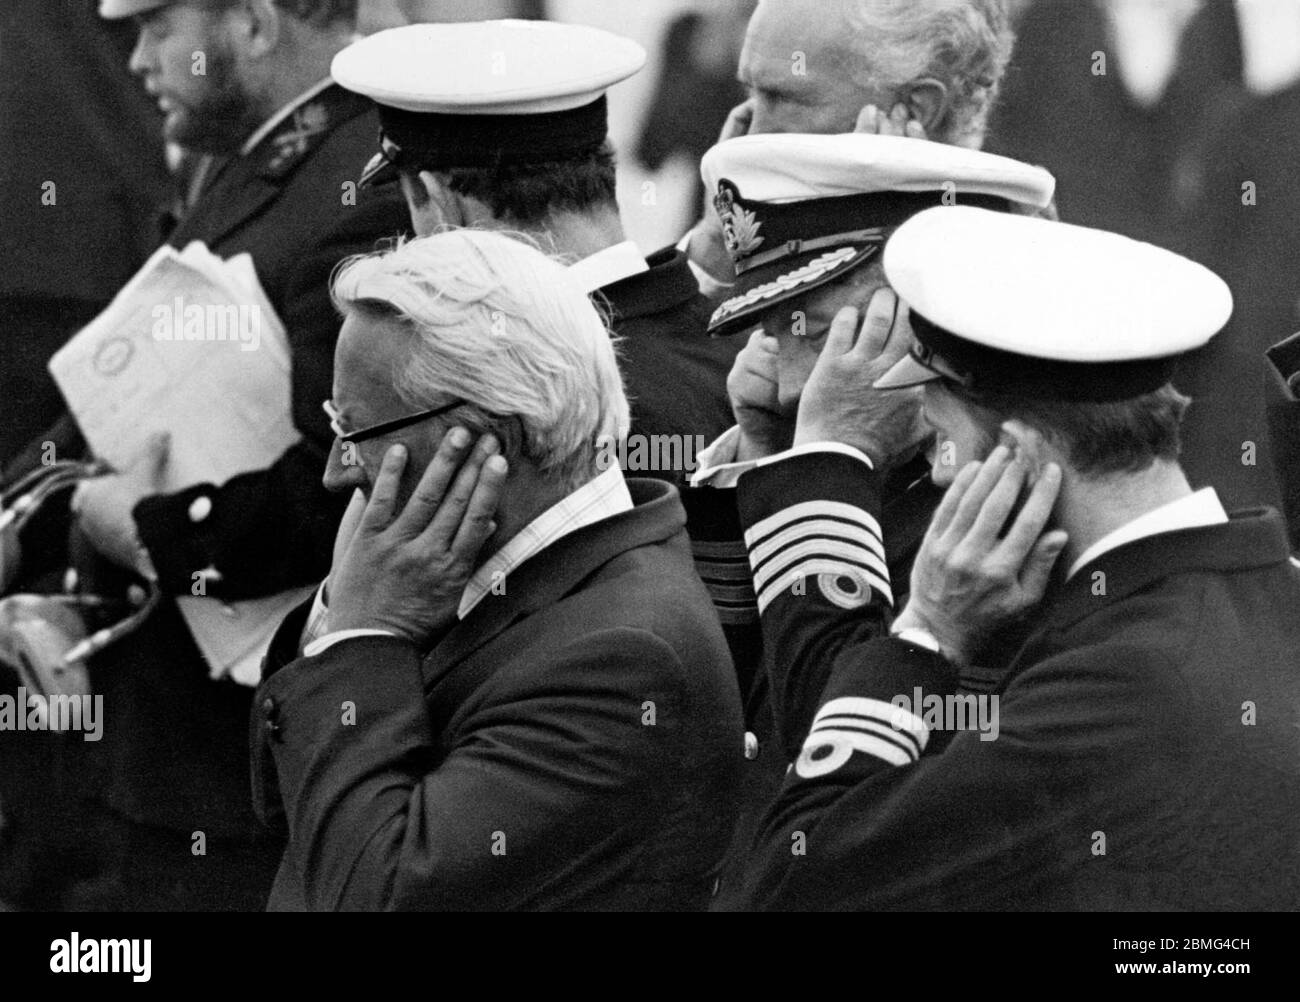 AJAXNETPHOTO. 31 AOÛT 1975.LONDRES, ANGLETERRE. - LES OREILLES SOURDES - FT CLIPPER RACE - MR EDWARD HEATH, PHOTOGRAPHIÉ AVEC DES OREILLES EN BOÎTE, AVEC LE COMMANDANT DE LA FRÉGATE HMS LONDONDERRY ET D'AUTRES OFFICIERS COMME CANON À SALER DU NAVIRE A ÉTÉ TIRÉ POUR DÉMARRER QUATRE YACHTS À L'OCCASION D'UNE TENTATIVE RECORD DE REJOINDRE SYDNEY, EN AUSTRALIE, EN MOINS DE 69 JOURS. PHOTO:JONATHAN EASTLAND/AJAX REF:750209 4 75 Banque D'Images